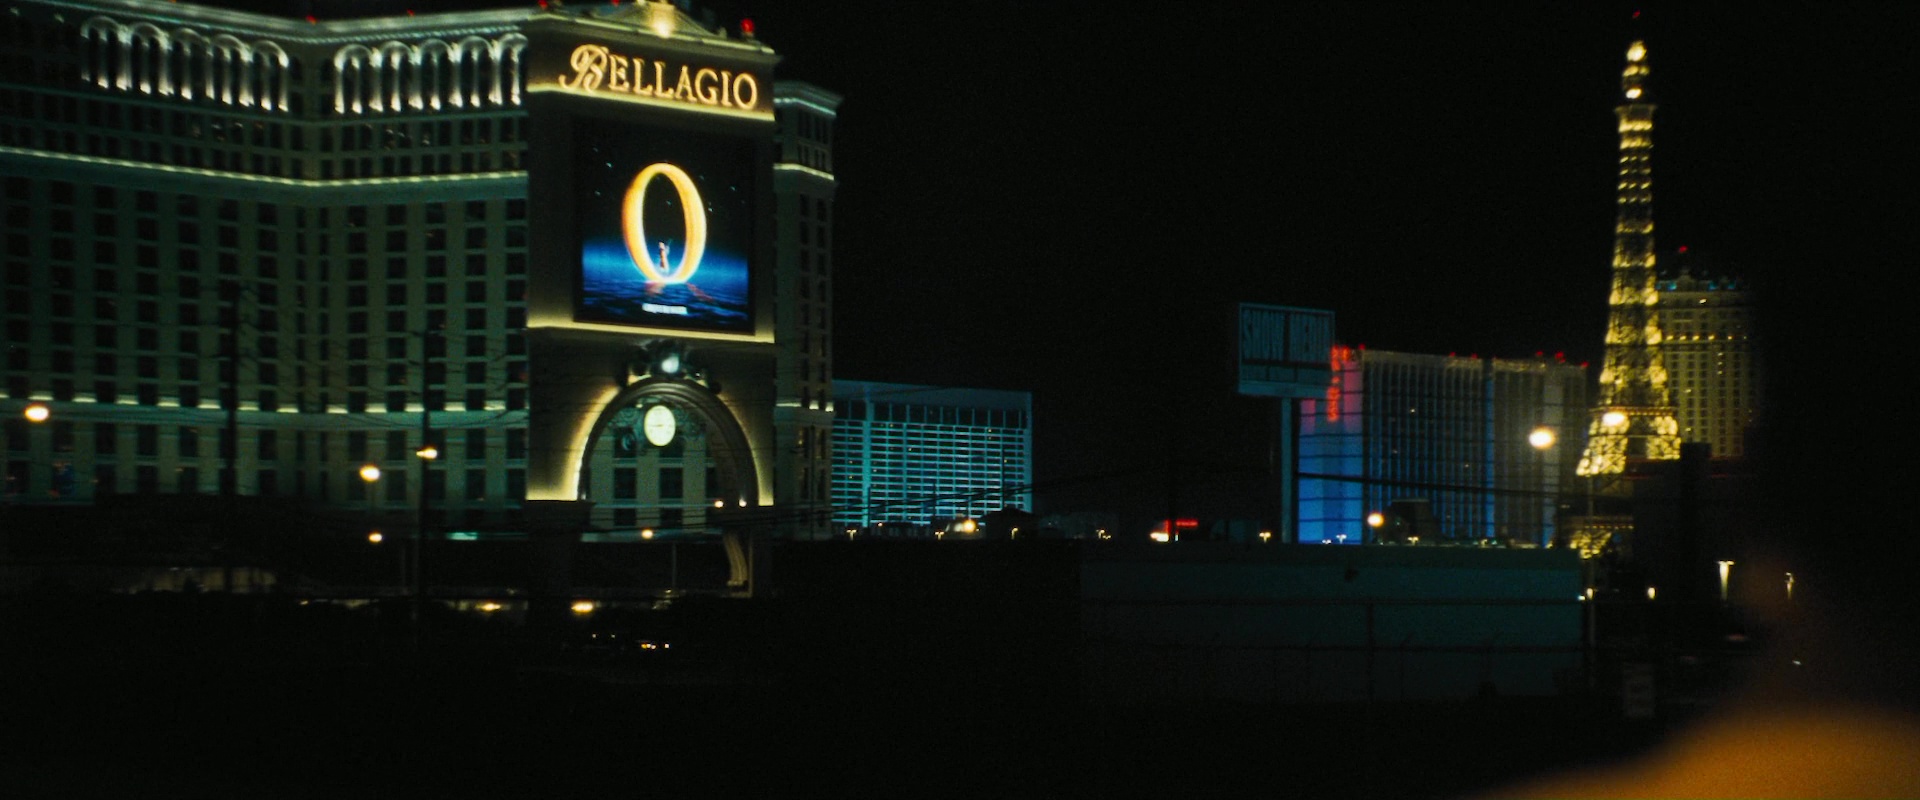 Oceans 11 Casino